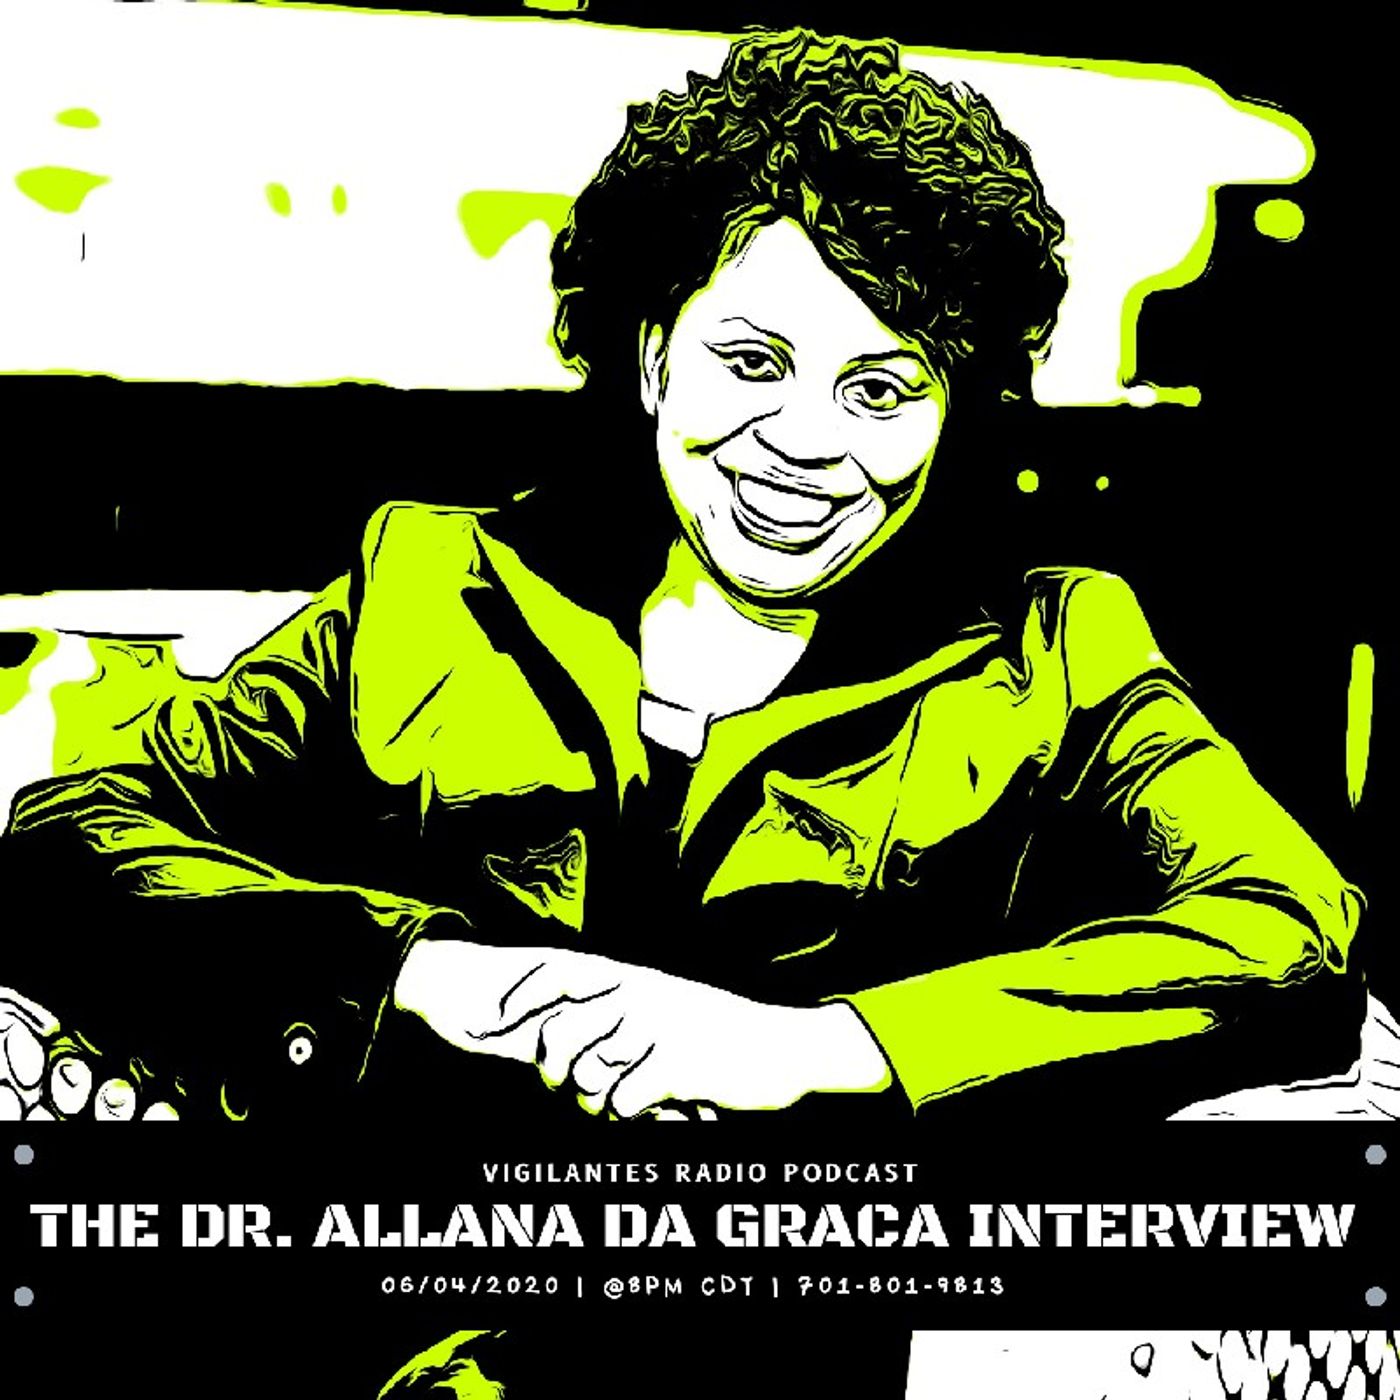 The Dr. Allana da Graca Interview. Image